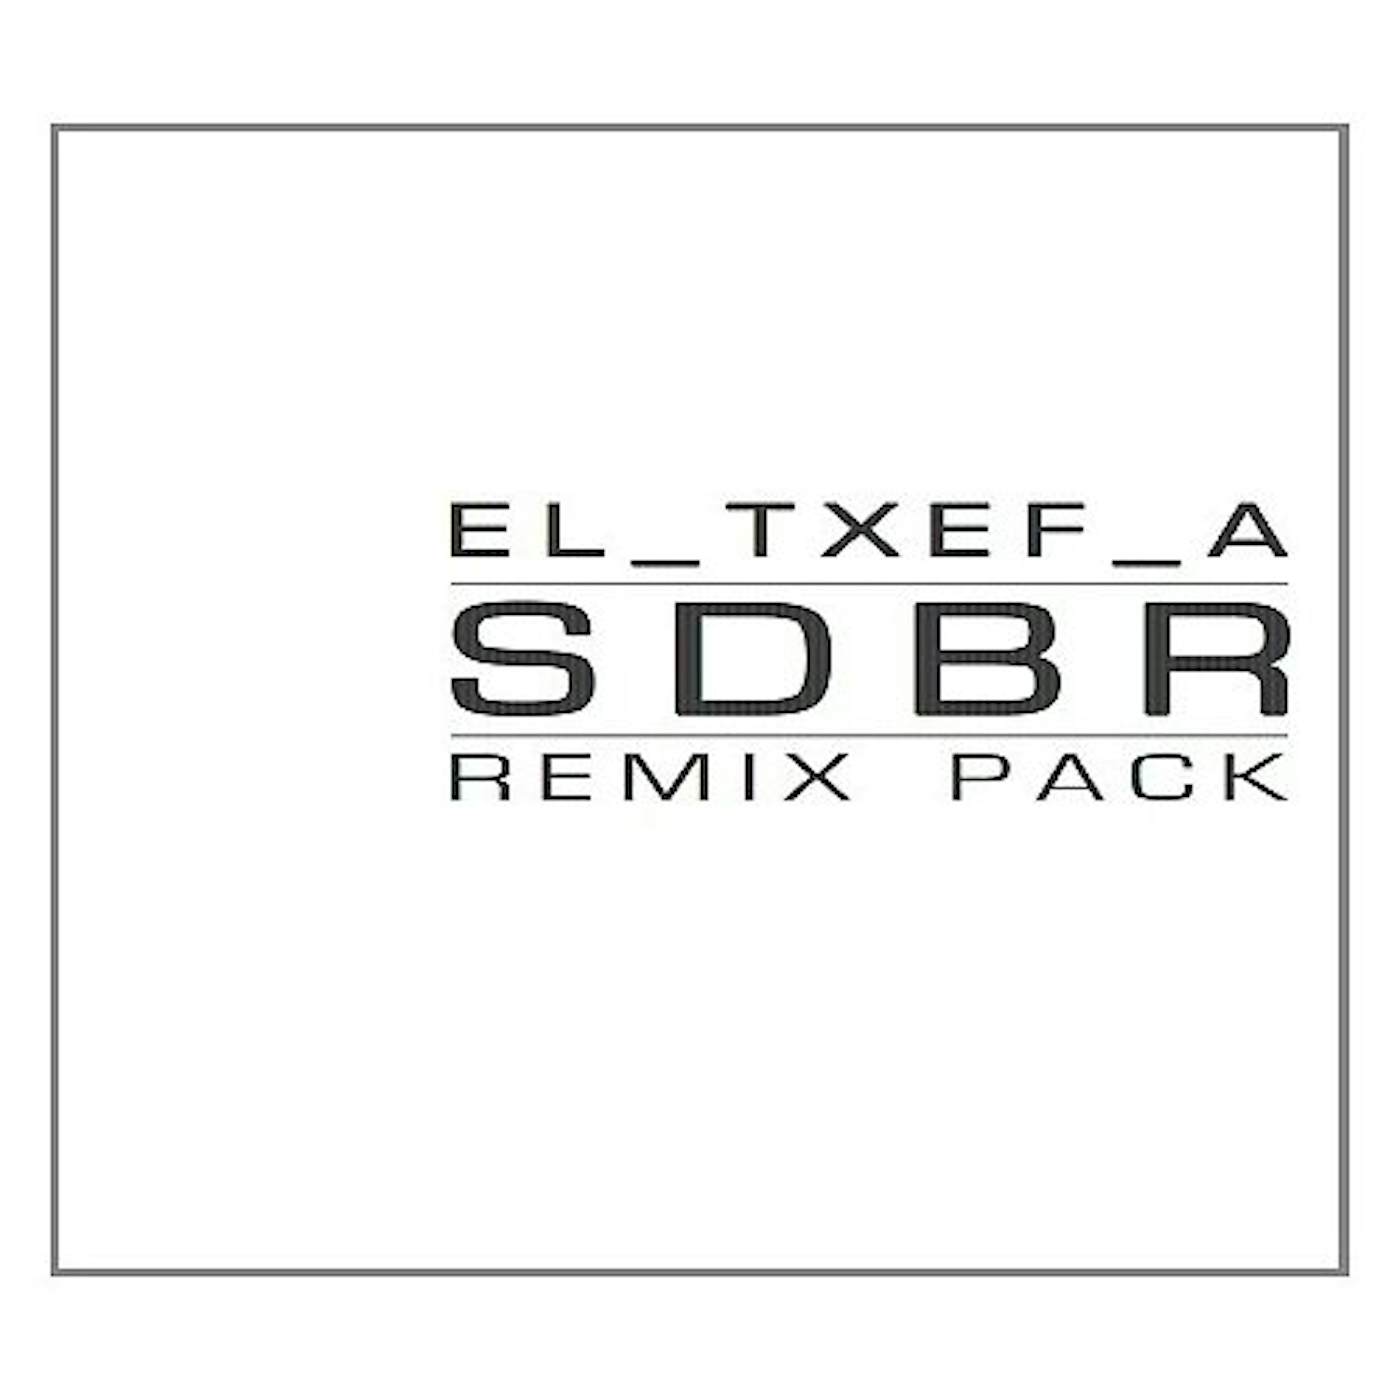 El-Txef-A RISE AND FALL / IN REMIXES Vinyl Record